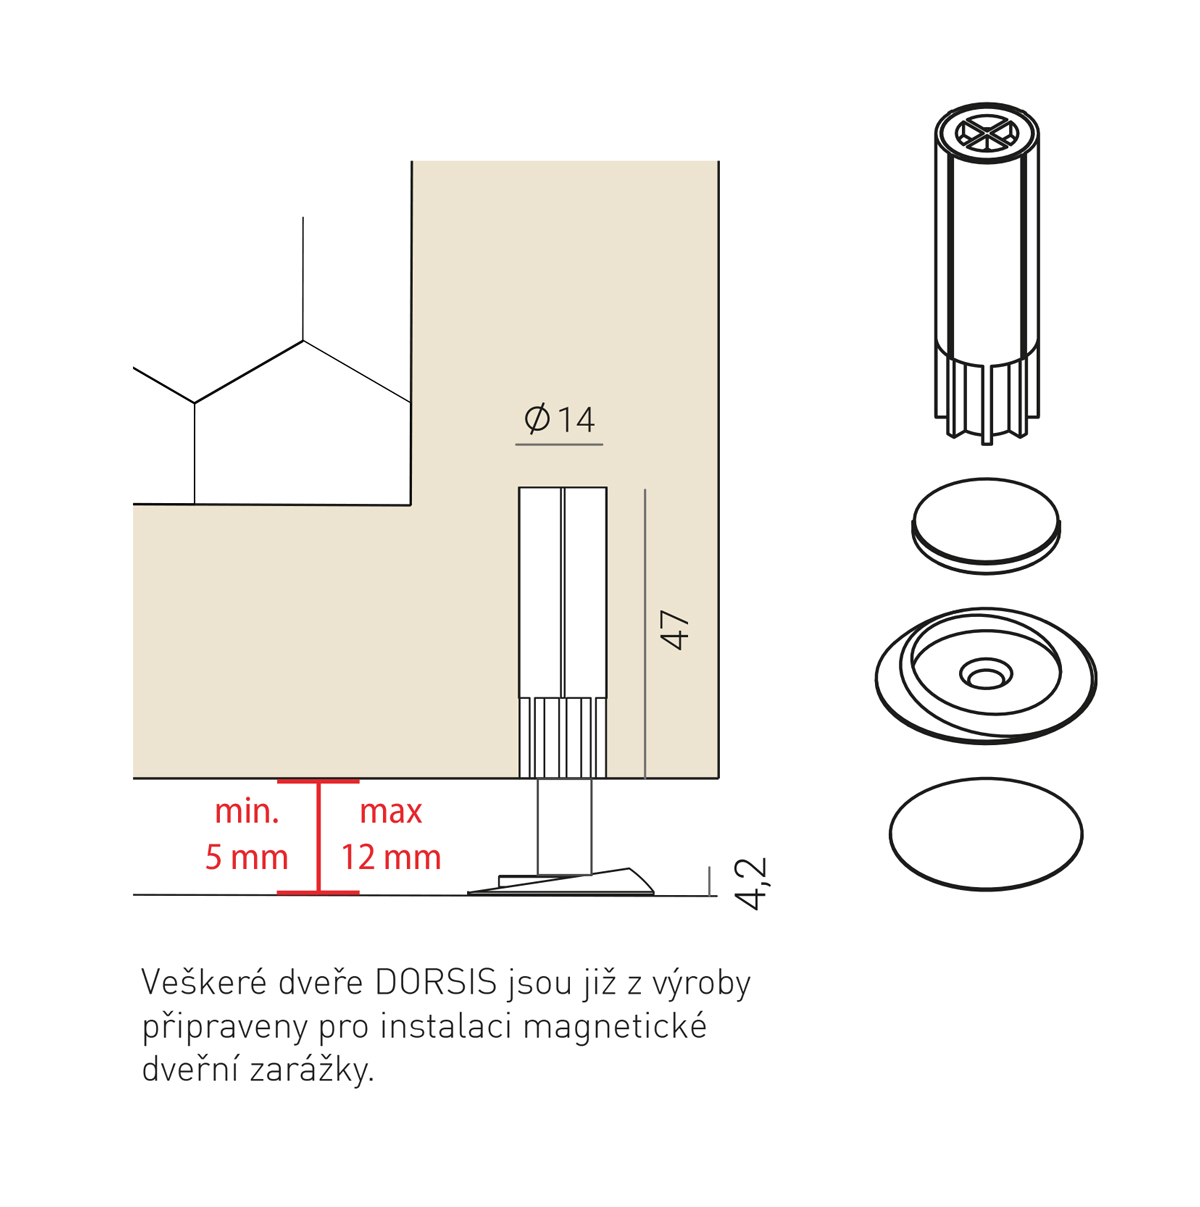 DORSIS NEO MAGNETIC - skrytá magnetická dveřní zarážka (doraz dveří) - Obrázek č. 1